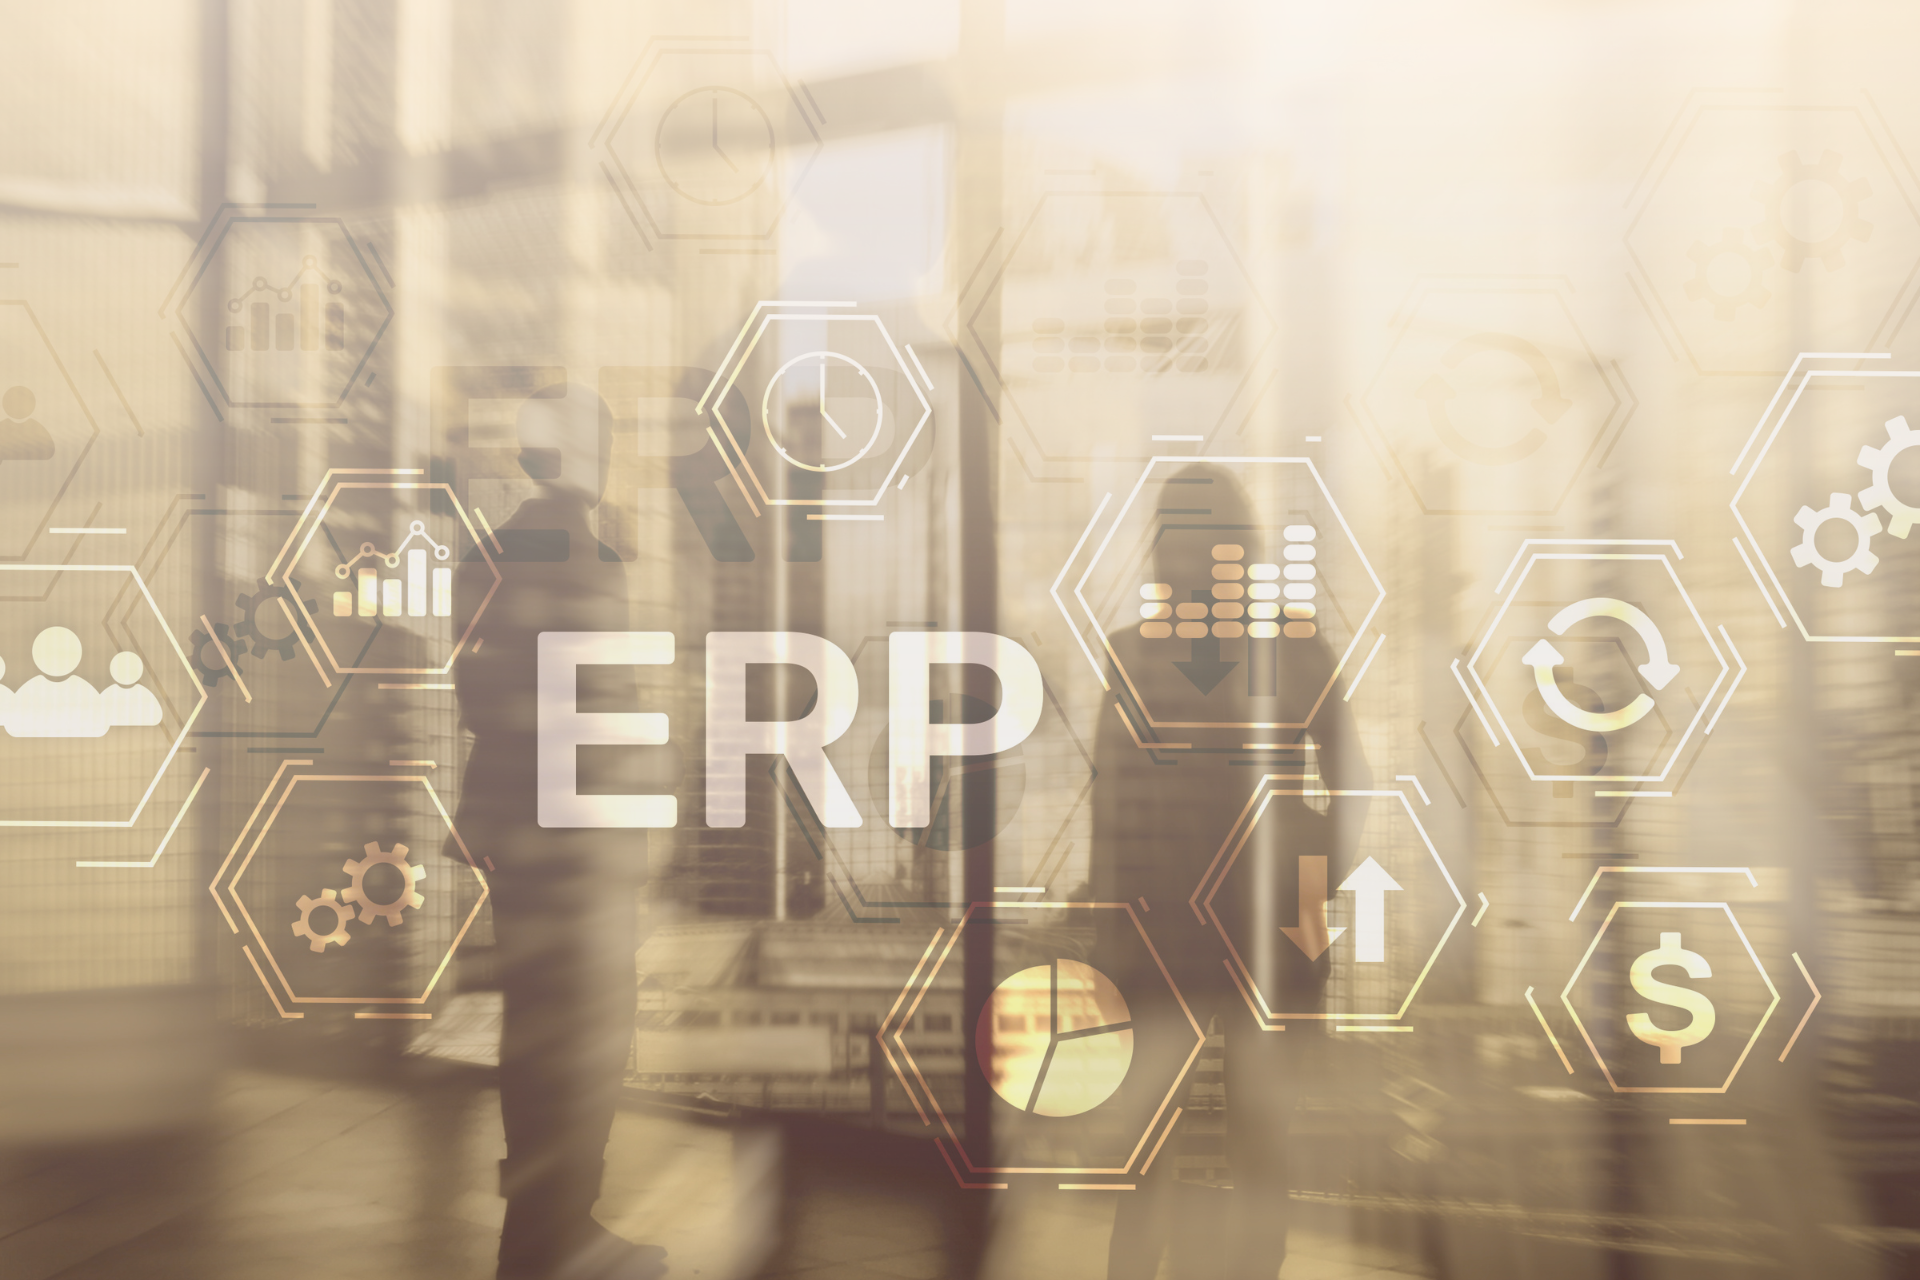 3 จุดเด่นของ 'ระบบ ERP' ที่ทำให้ธุรกิจชั้นนำทั่วโลกเลือกใช้งาน